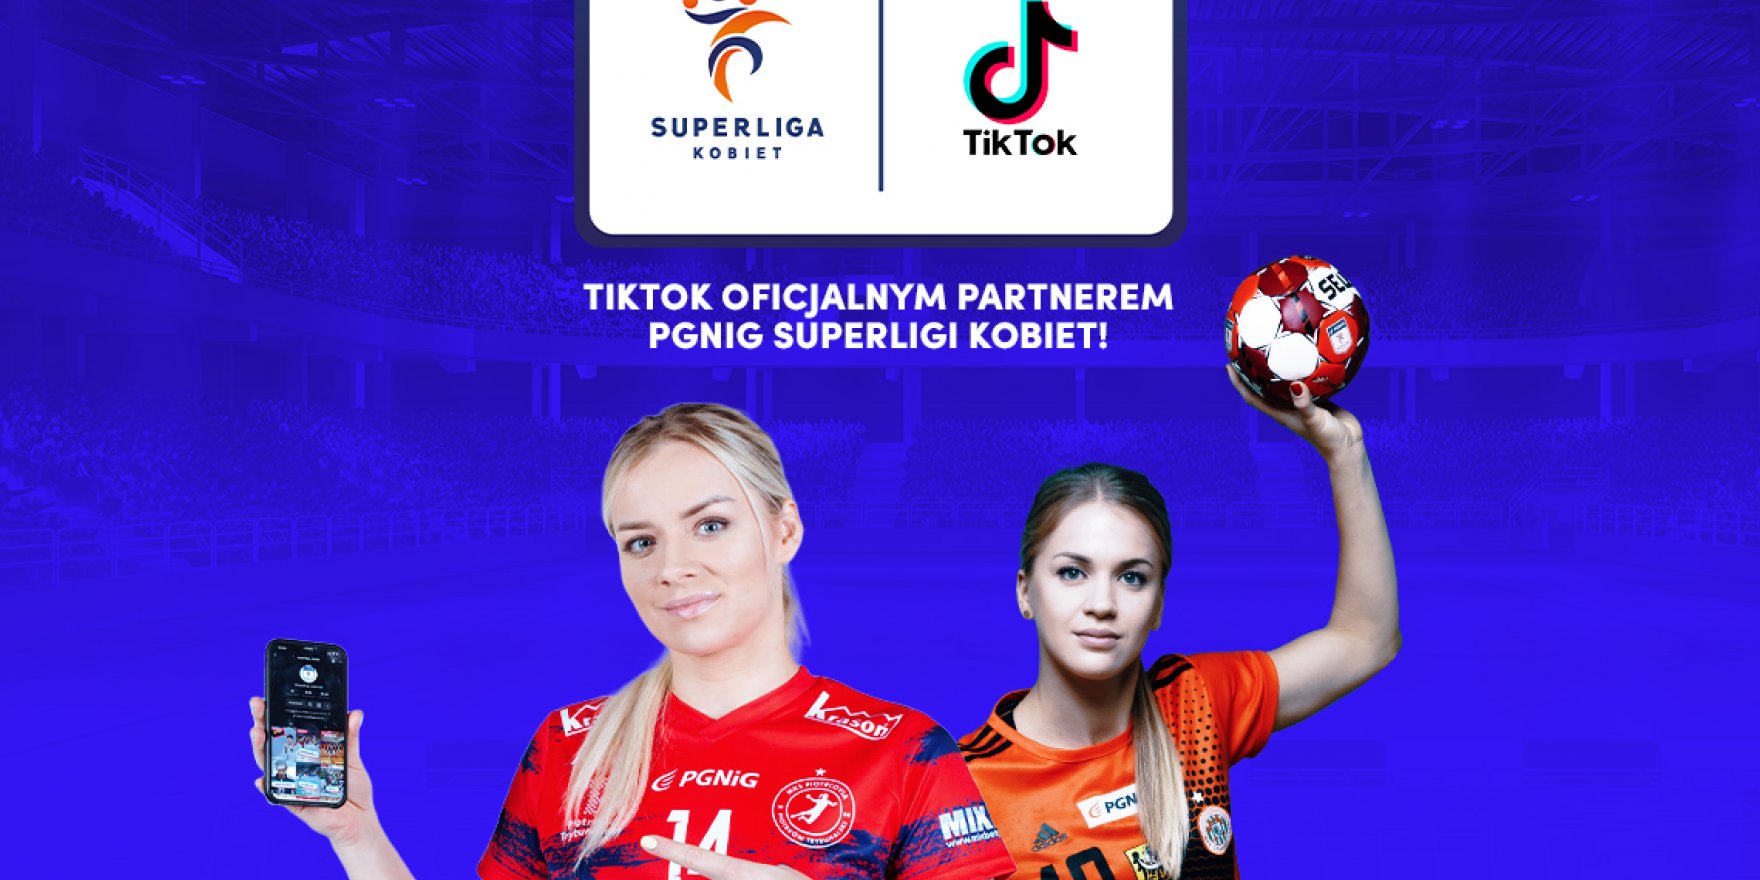 Superliga rozpoczęła współpracę z TikTokiem